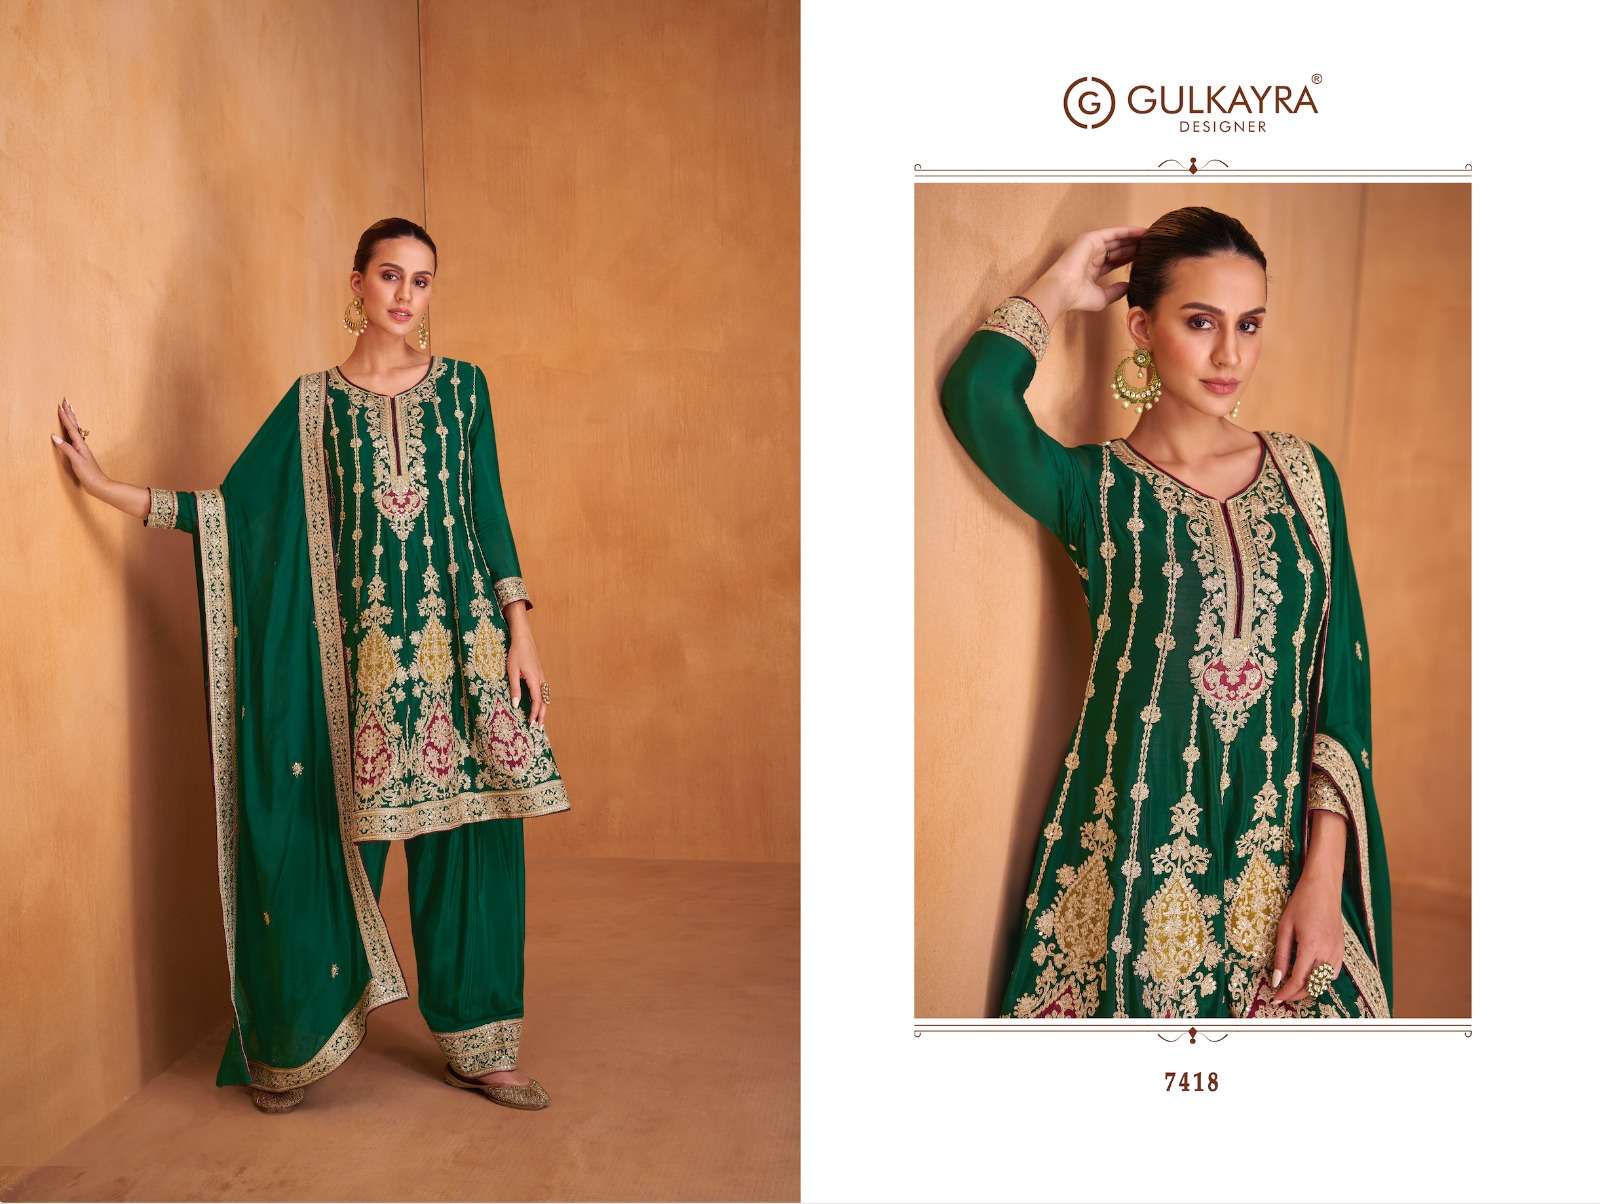 gulkayra designer shysha 7416-7420 series latest designer readymade salwar kameez wholesaler surat gujarat